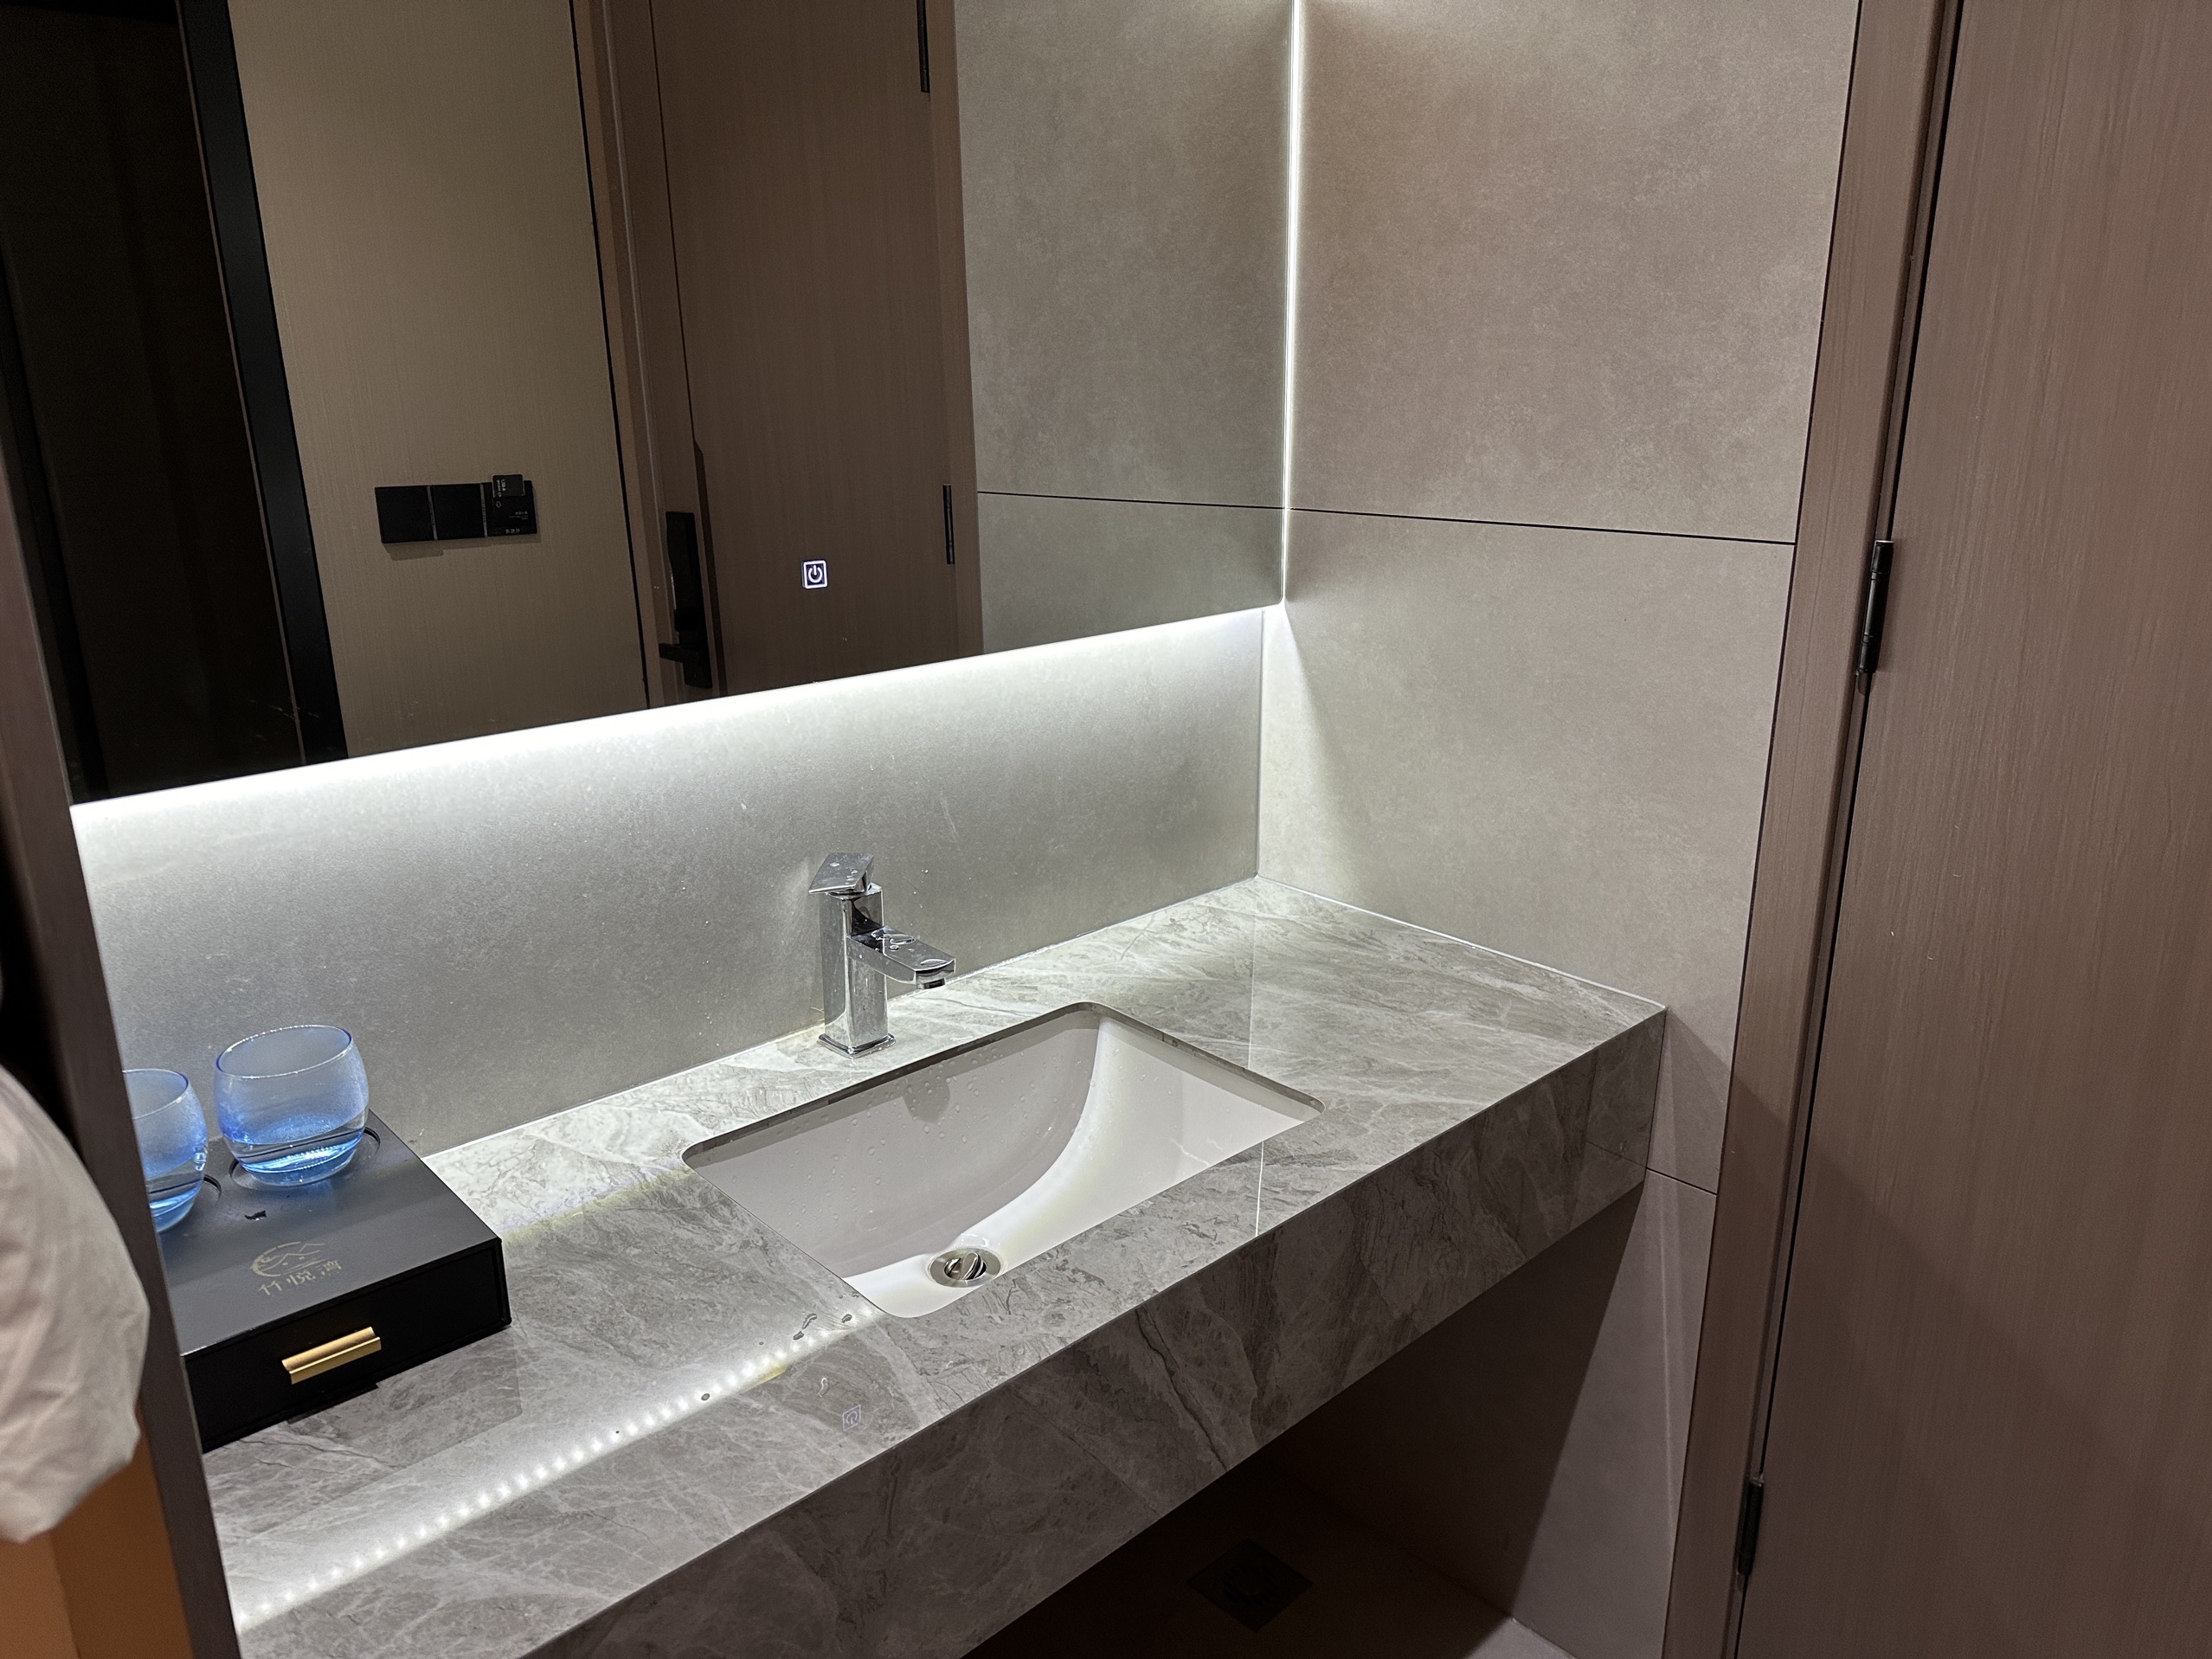 竹悦湾酒店是一家新开的民宿，房间干净整洁设施齐全，服务人员非常的热情，房间的空调可以制暖很暖和，定了